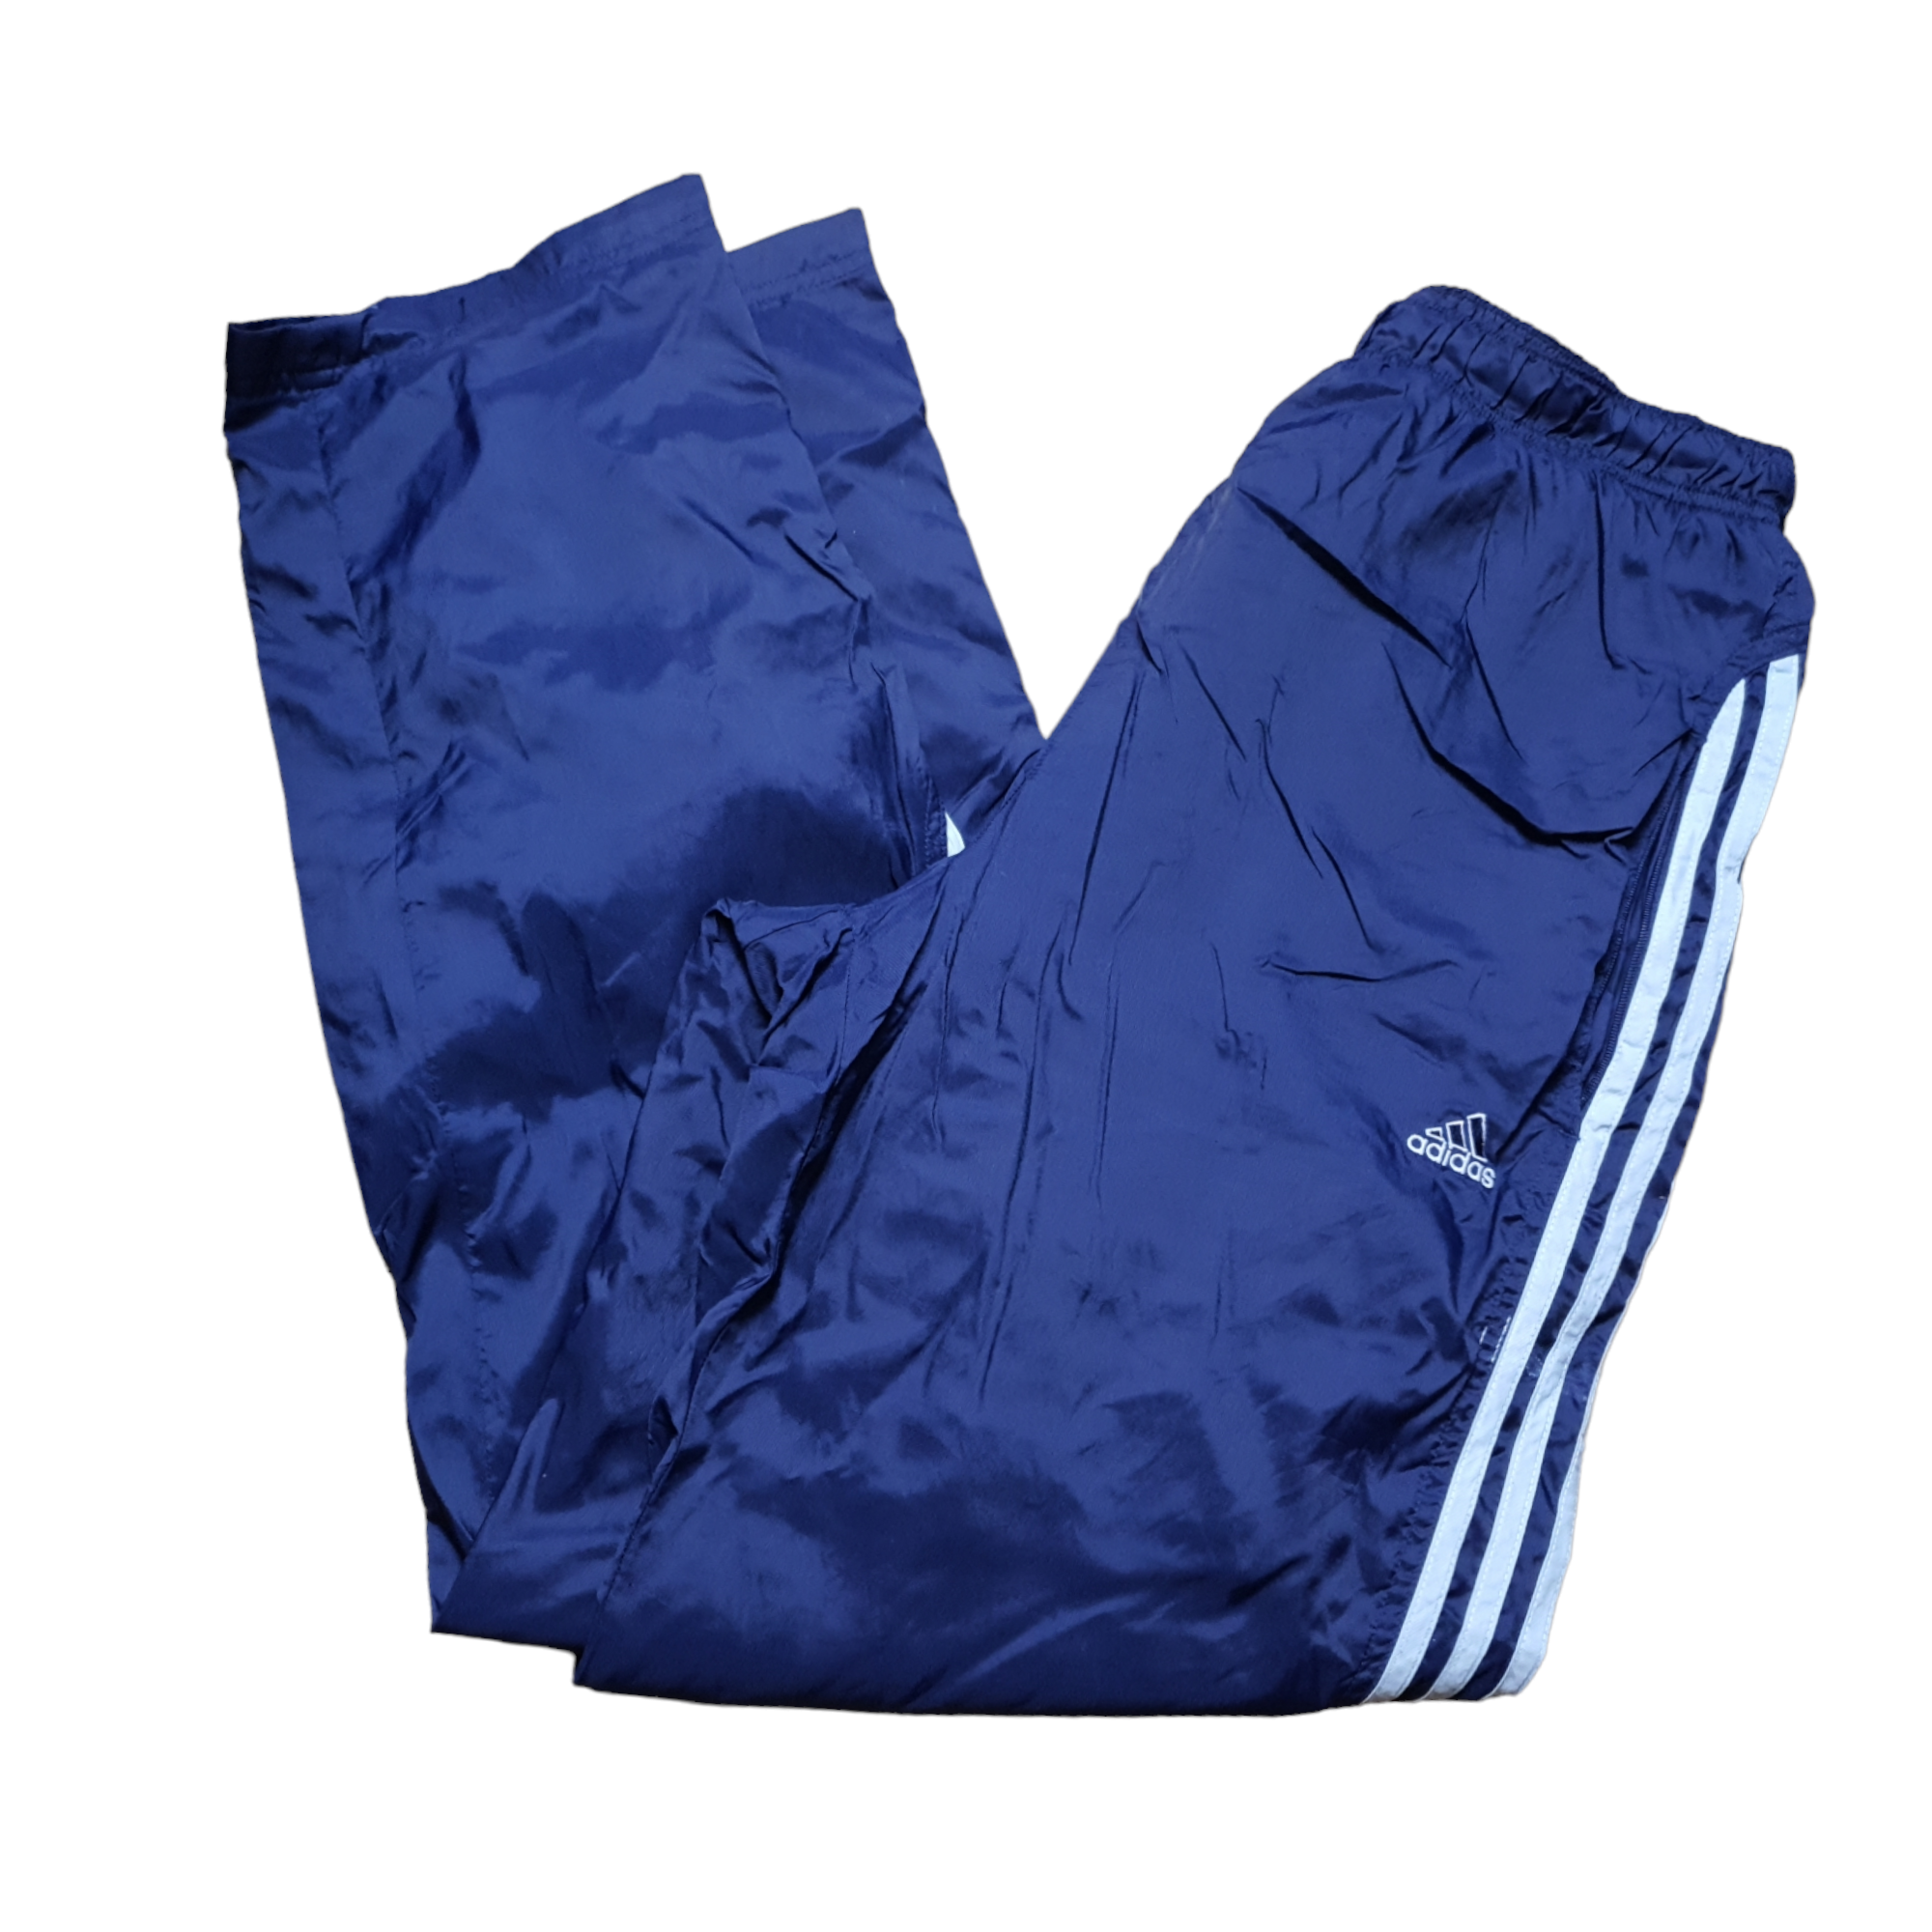 [M] Vintage Adidas Trackpants